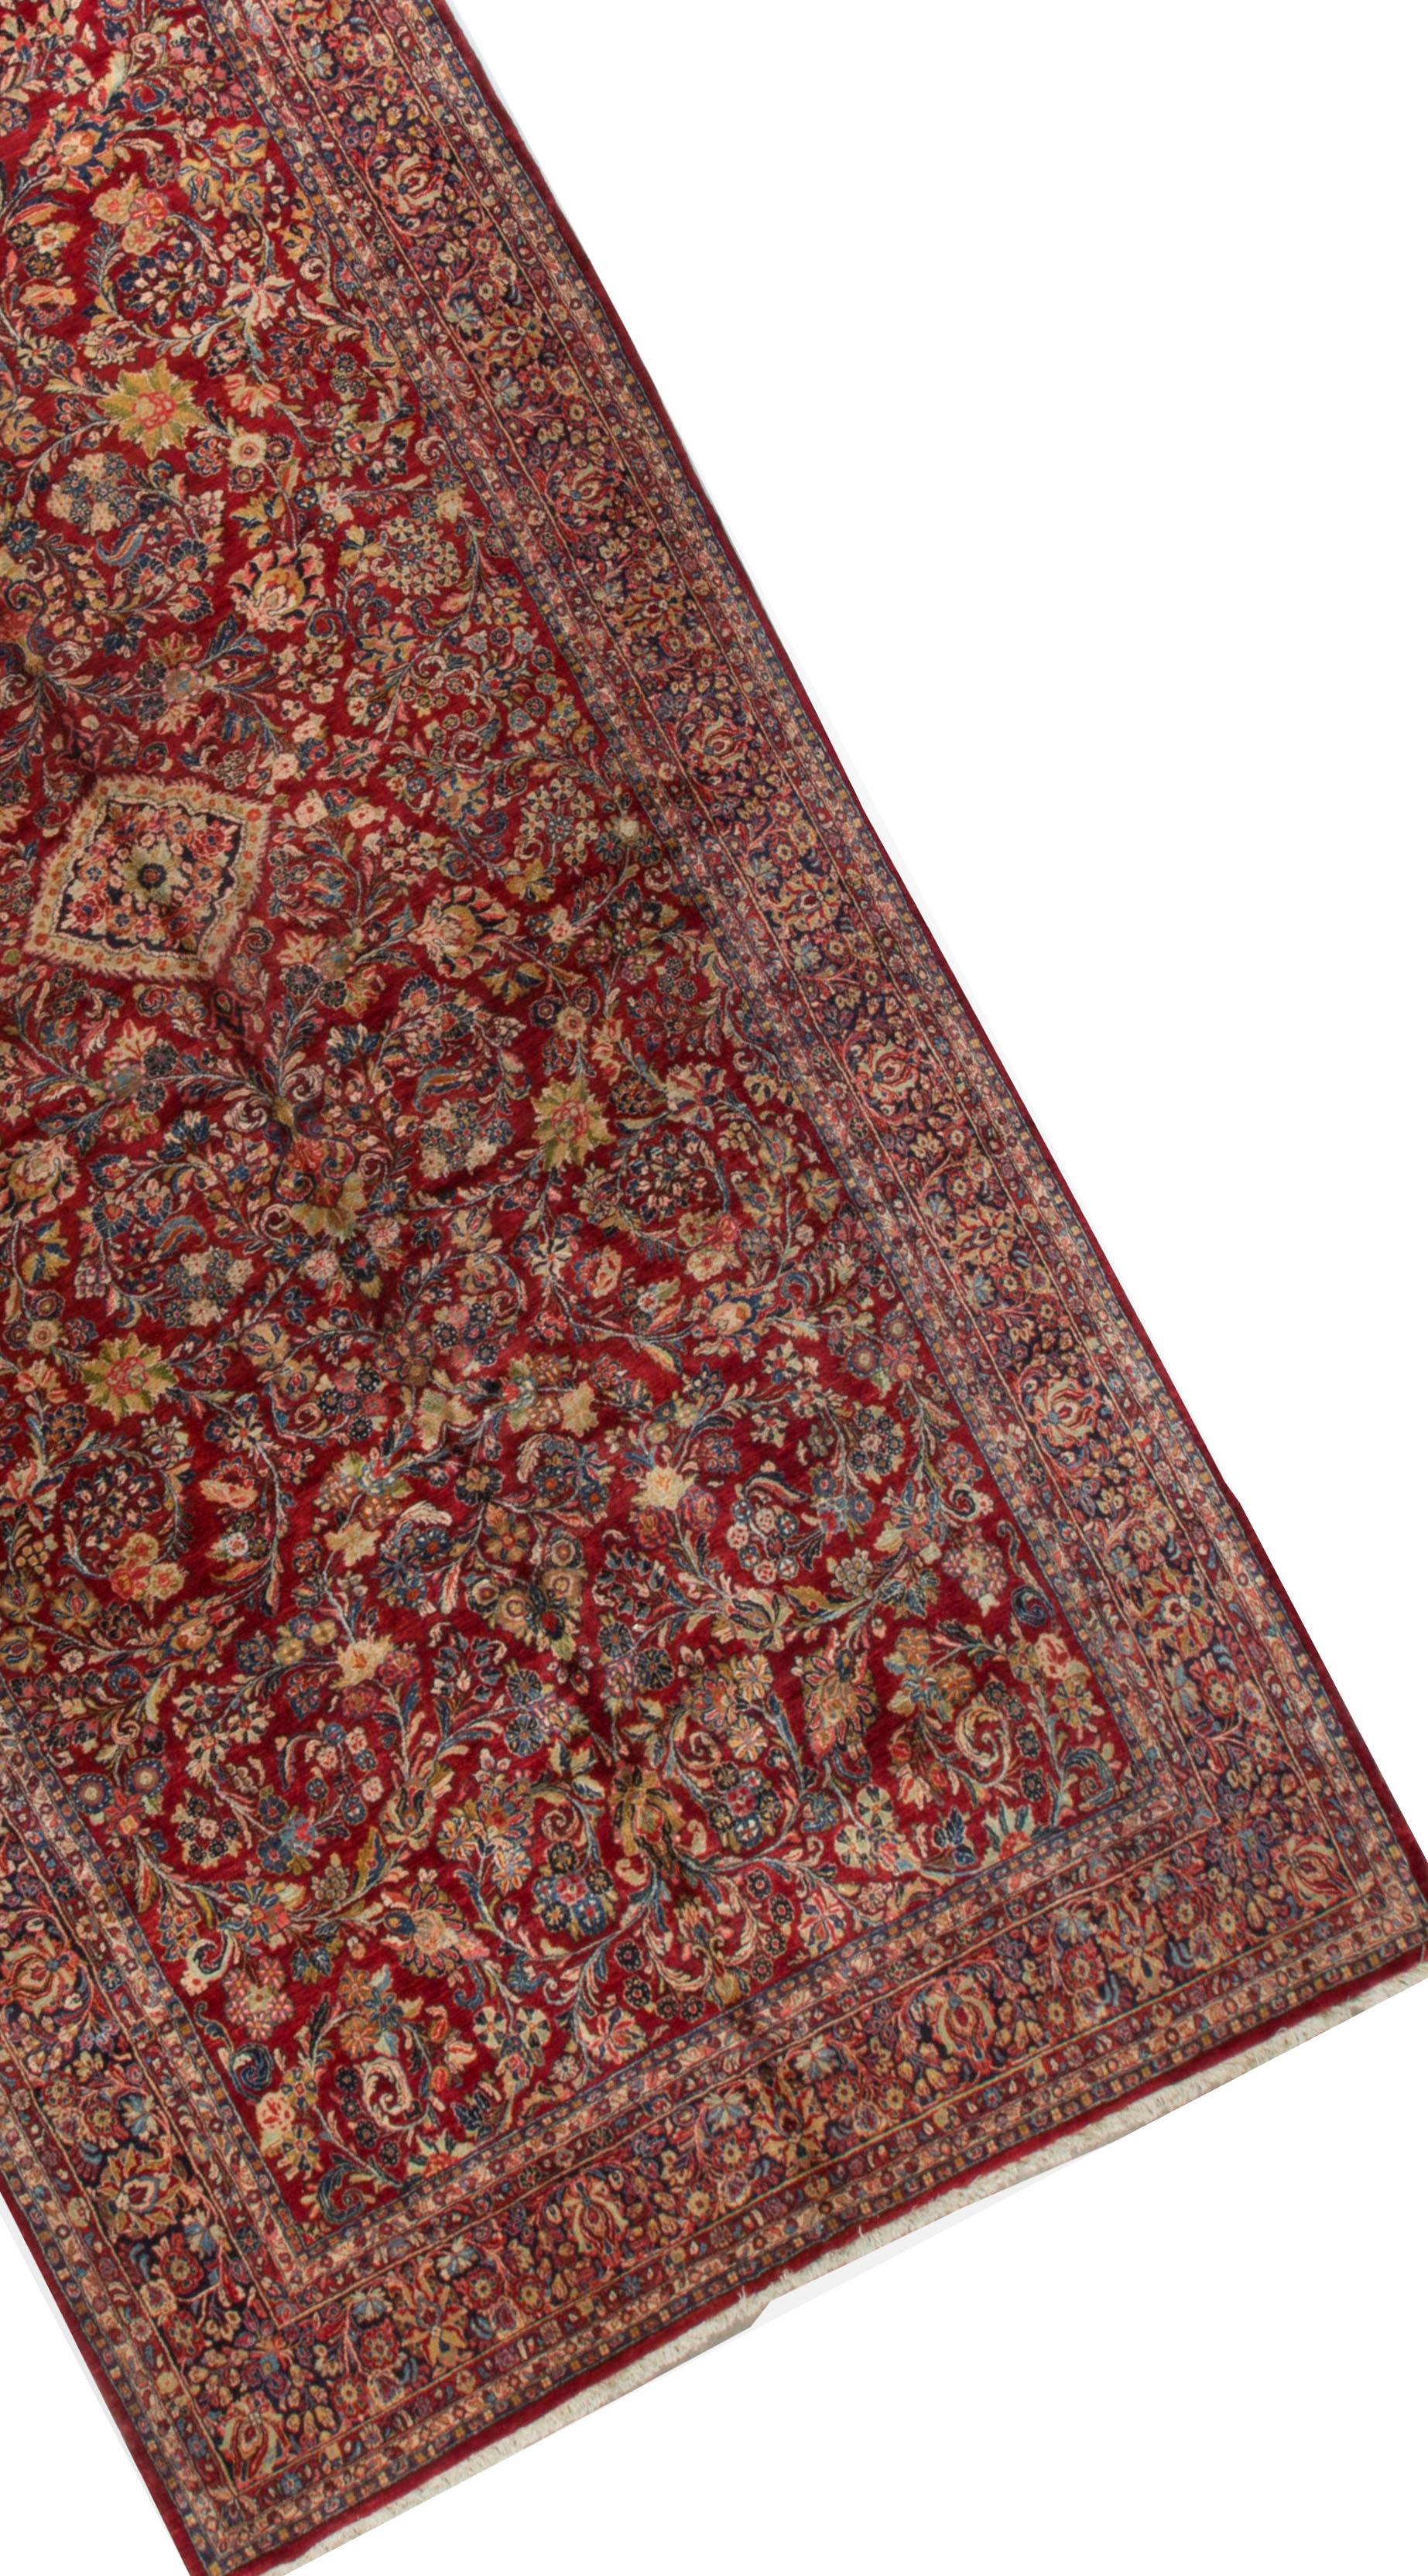 Dieser schwer zu findende Galerieteppich ist so konzipiert, dass er eine große Wirkung erzielt. Der gesamte Teppich ist voll von detaillierten Blumenmustern, die mit Präzision und Liebe zum kleinsten Detail gewebt wurden. Sarouk-Teppiche stammen aus